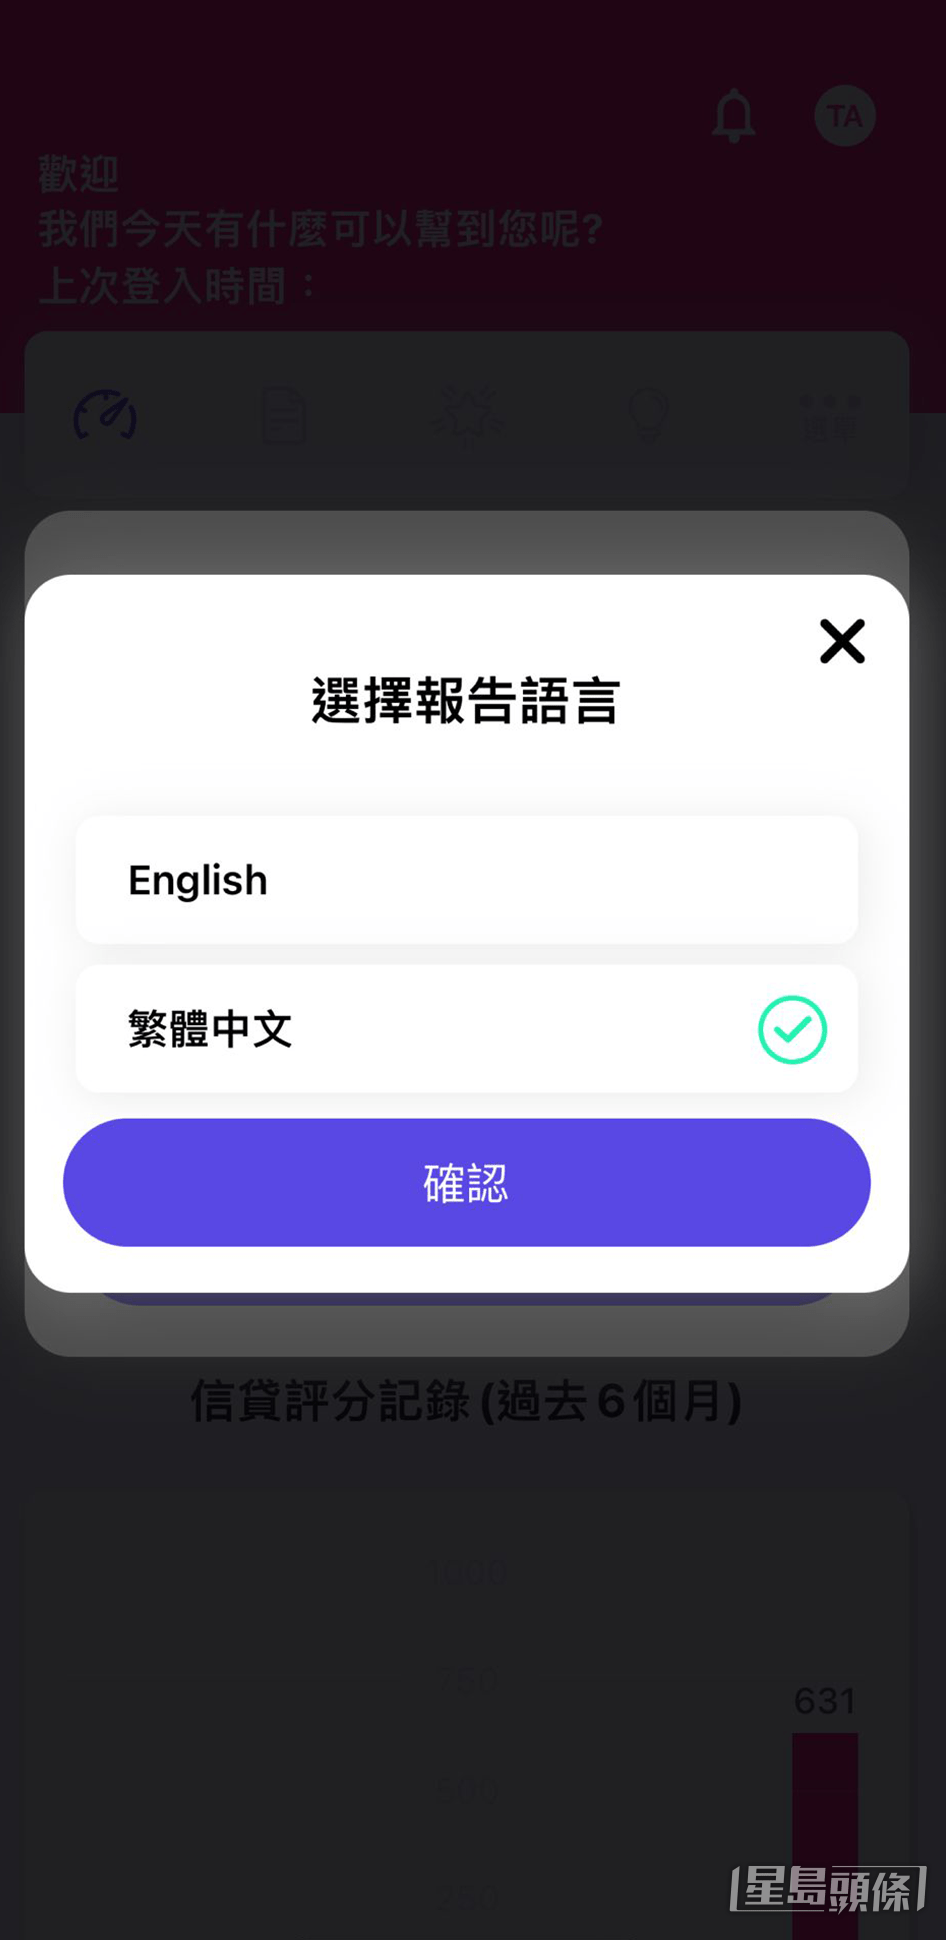 步驟 2：選擇報告語言，支援「繁體中文版」或「英文版」兩種語言版本